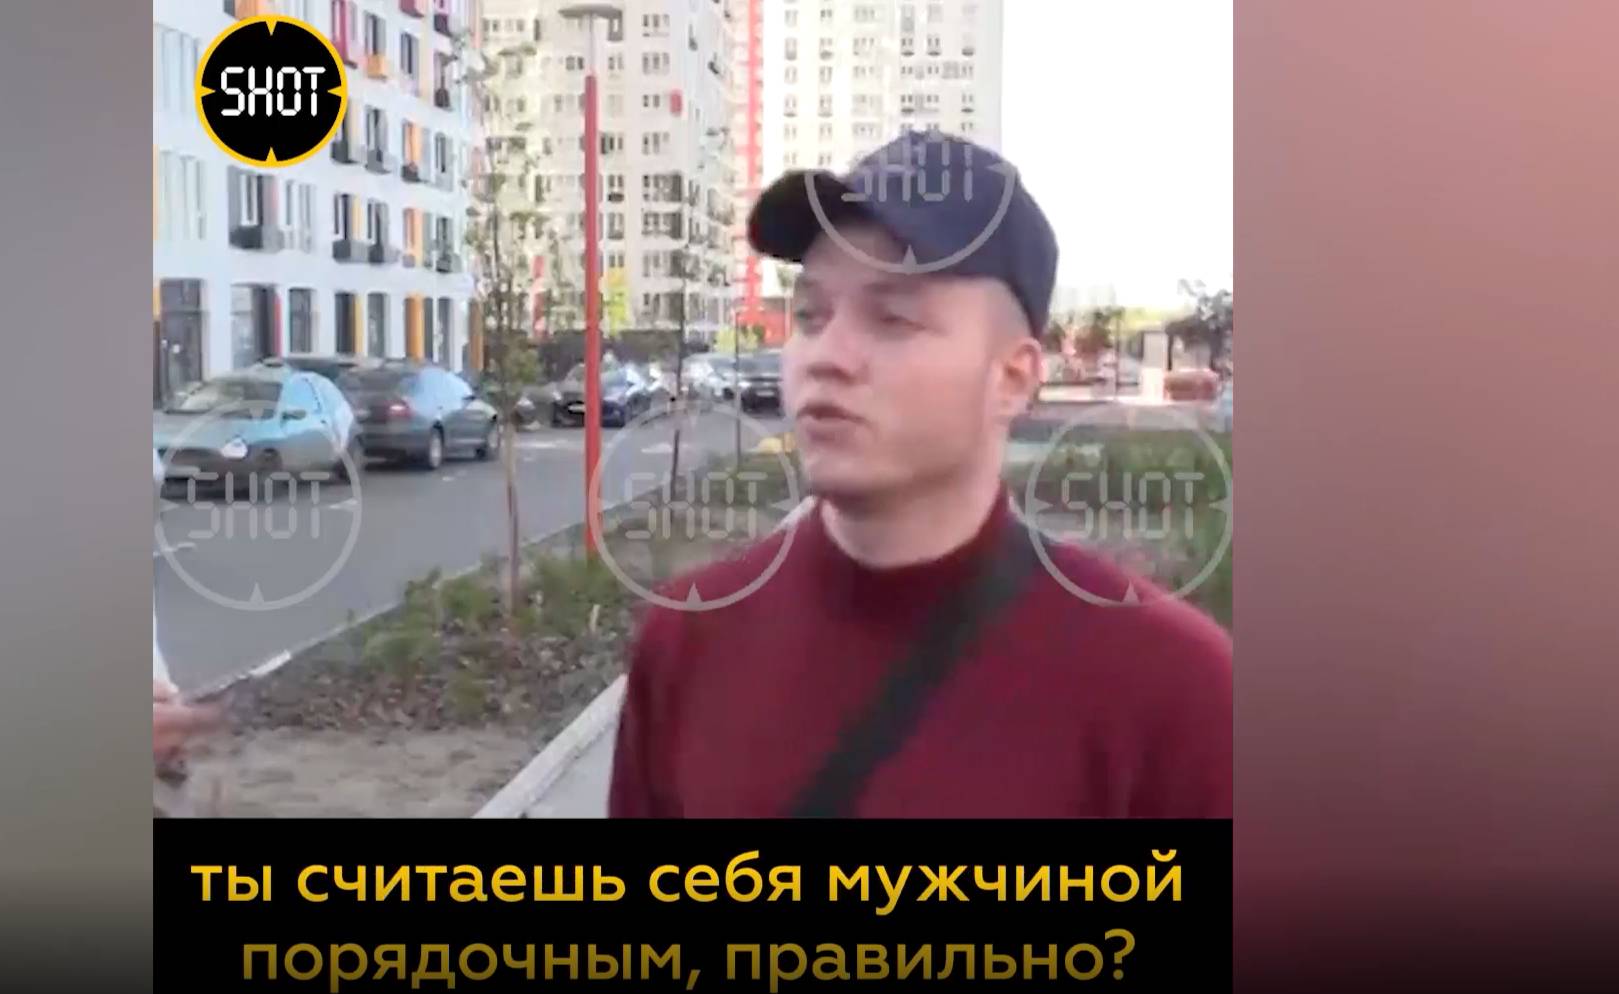 Стрельба из пистолета в московском ЖК "Спутник" началась из-за девушки